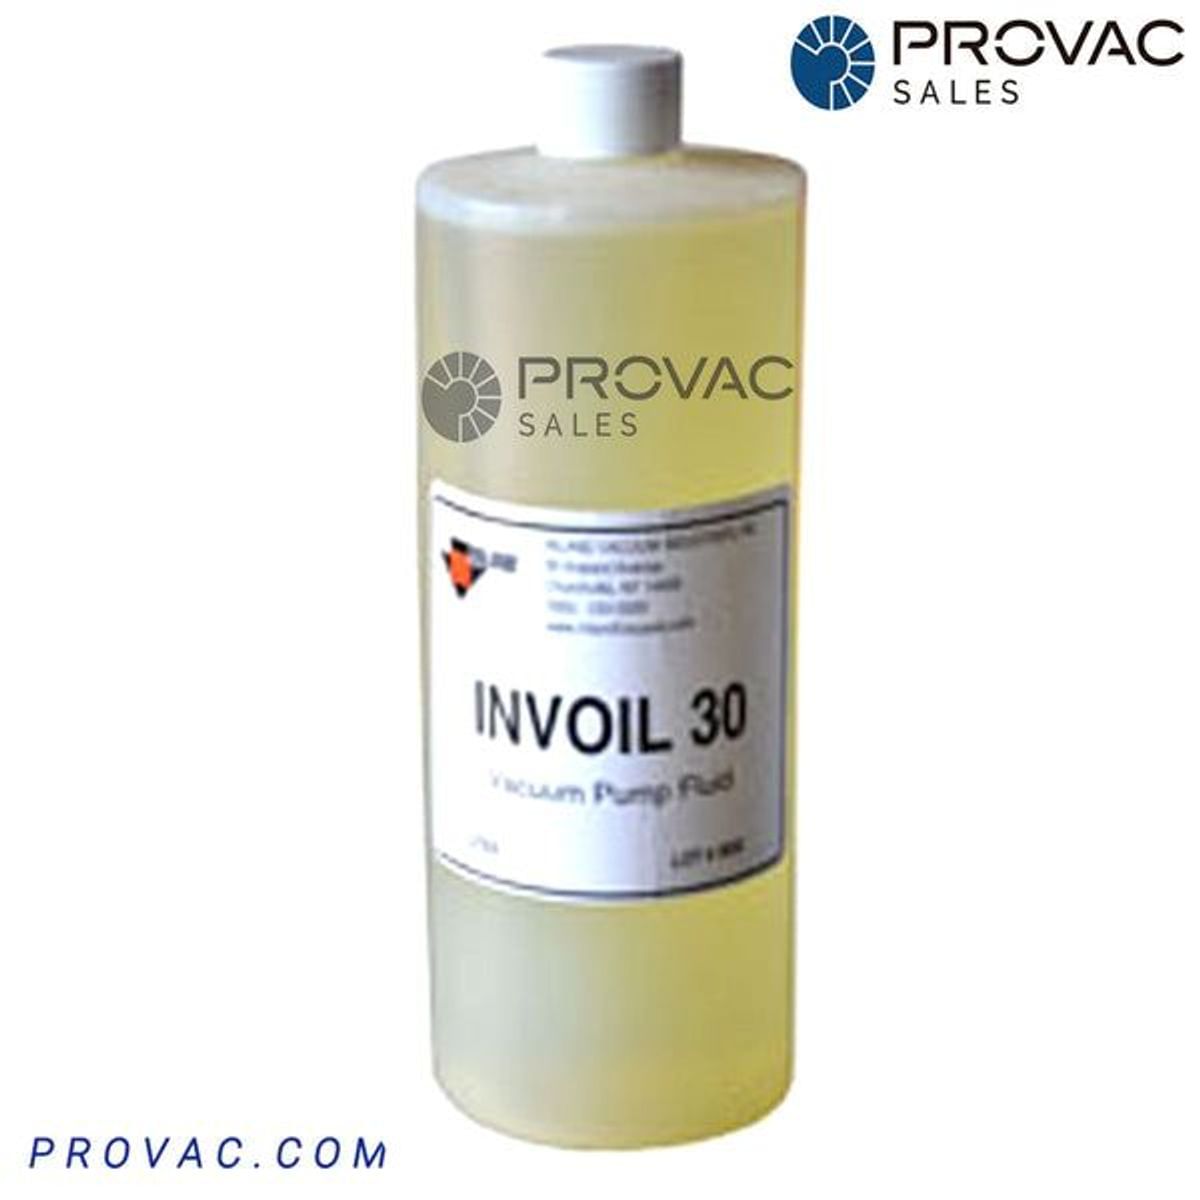 Invoil 30 Diffusion Pump Oil Image 1